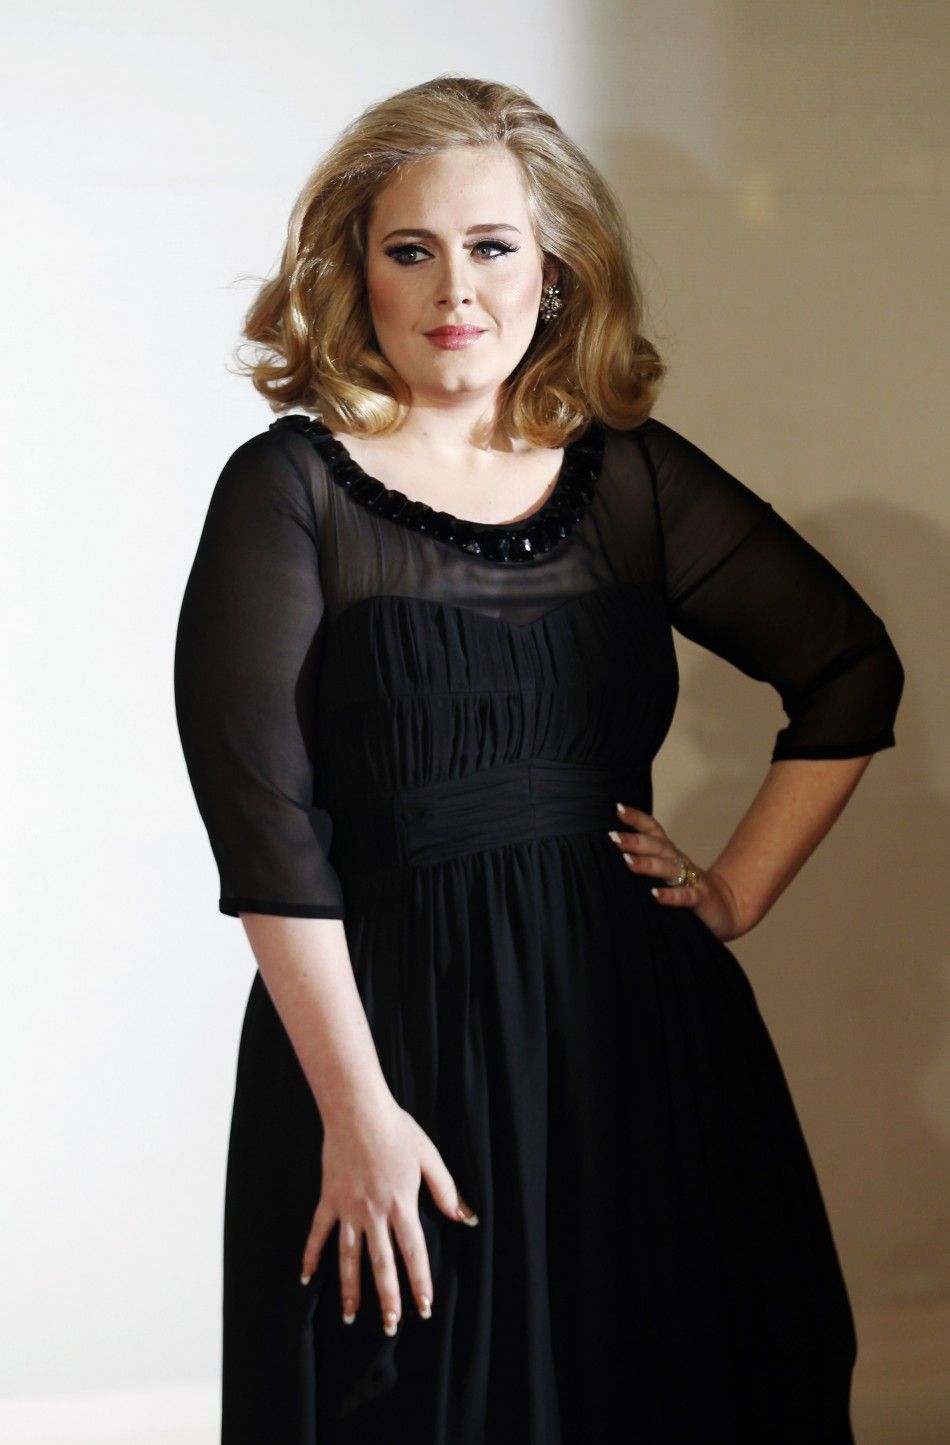 Singer Adele